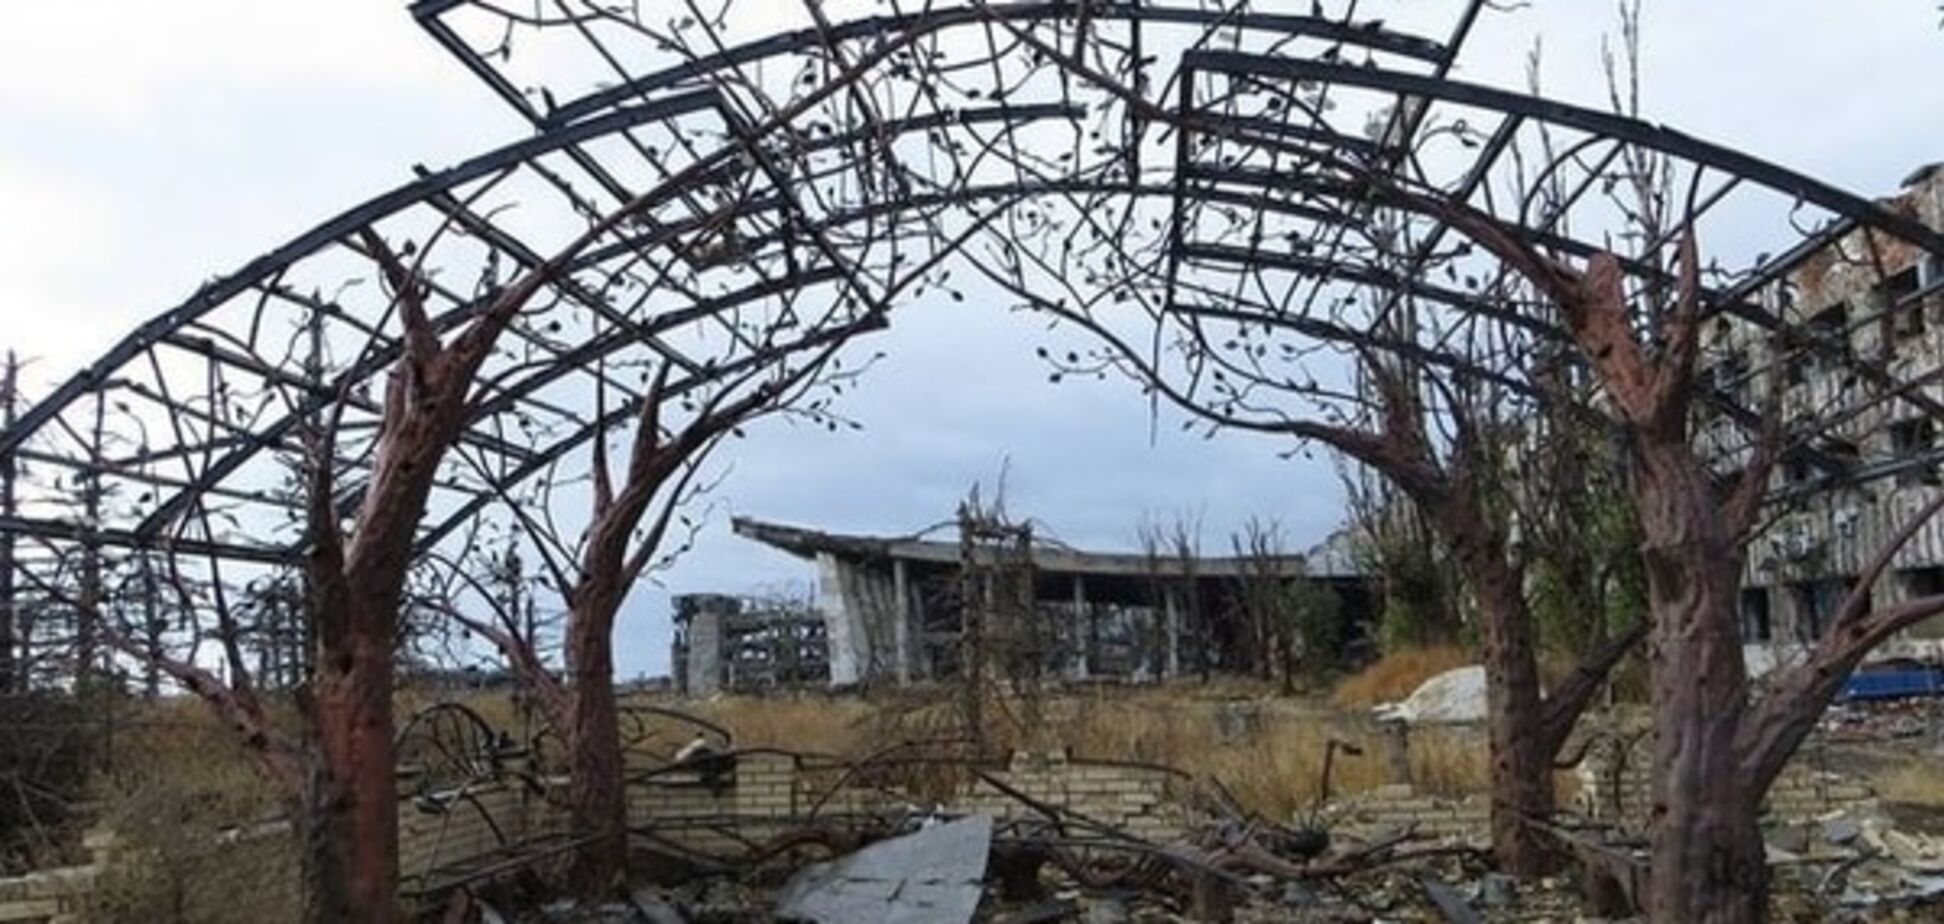 Отдых на костях: в парк Донецка перенесут беседку из разрушенного аэропорта